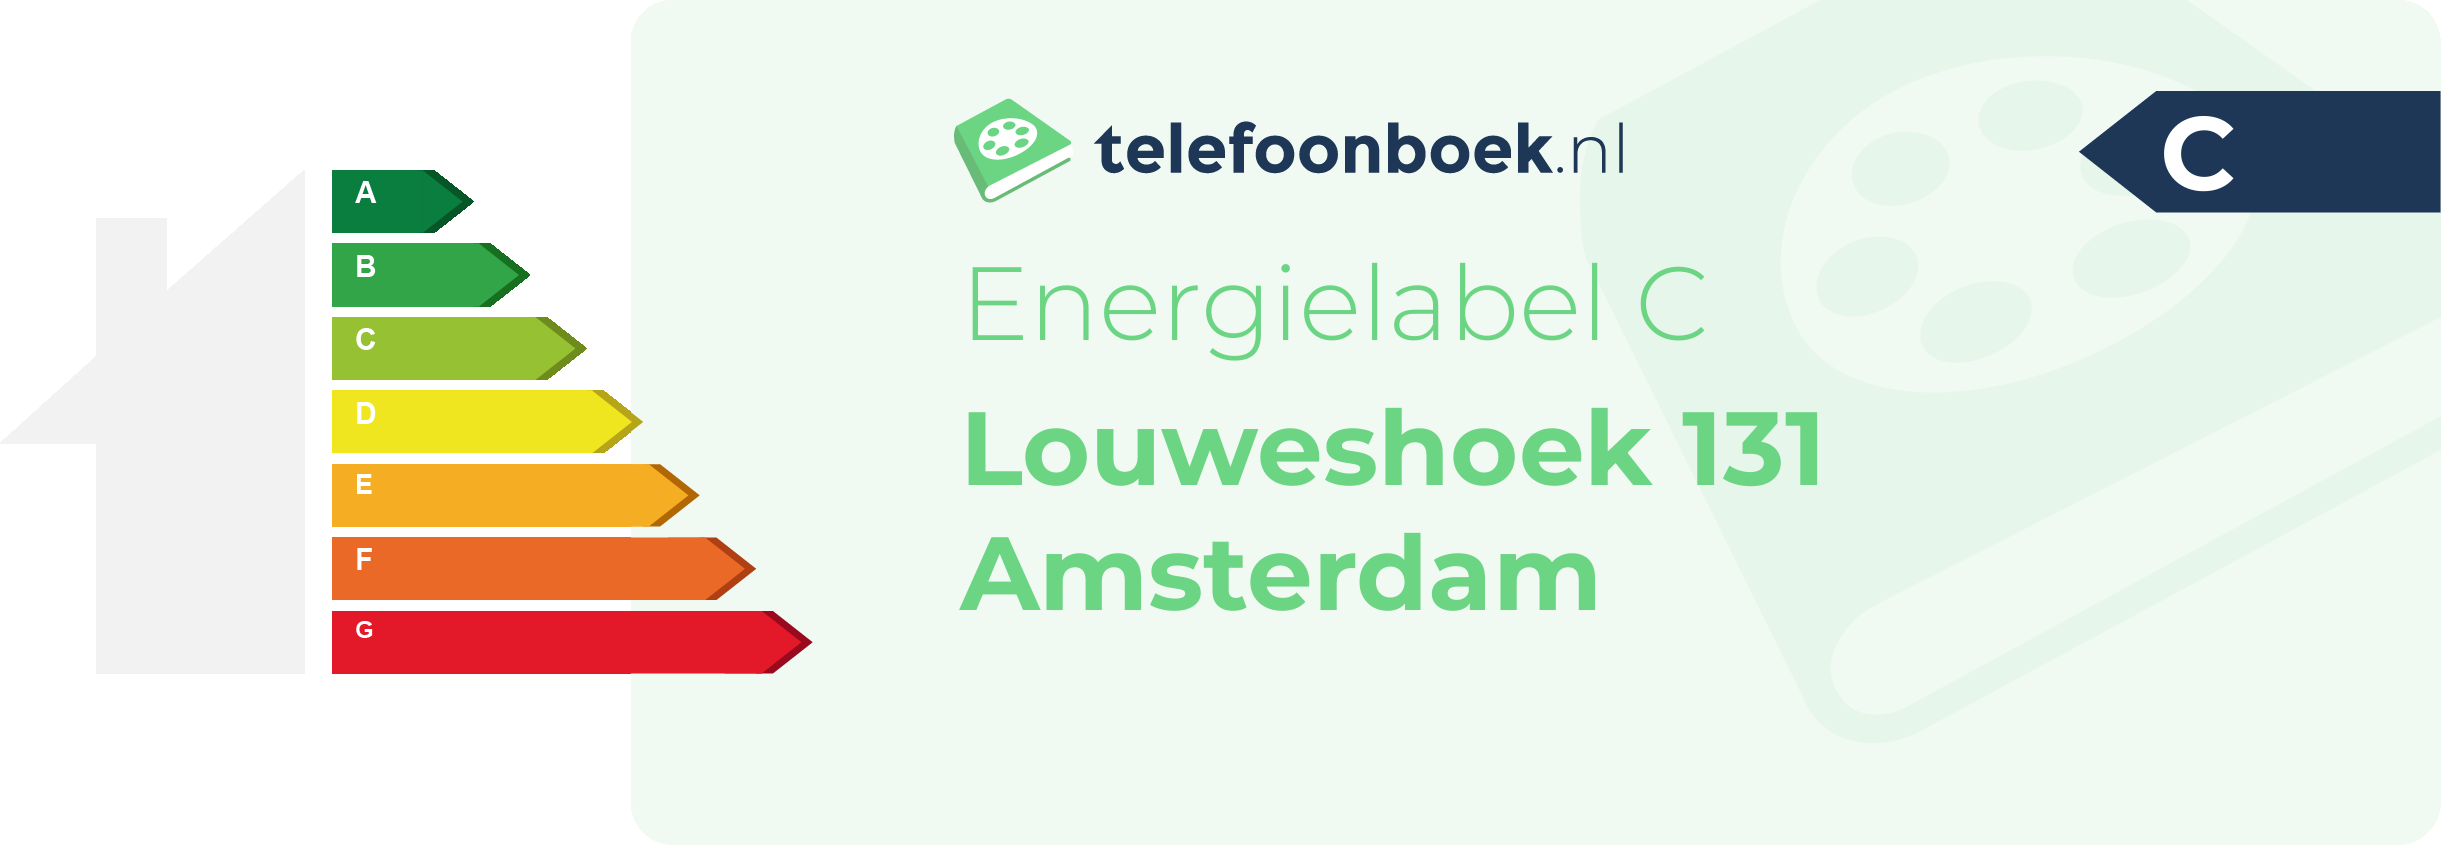 Energielabel Louweshoek 131 Amsterdam